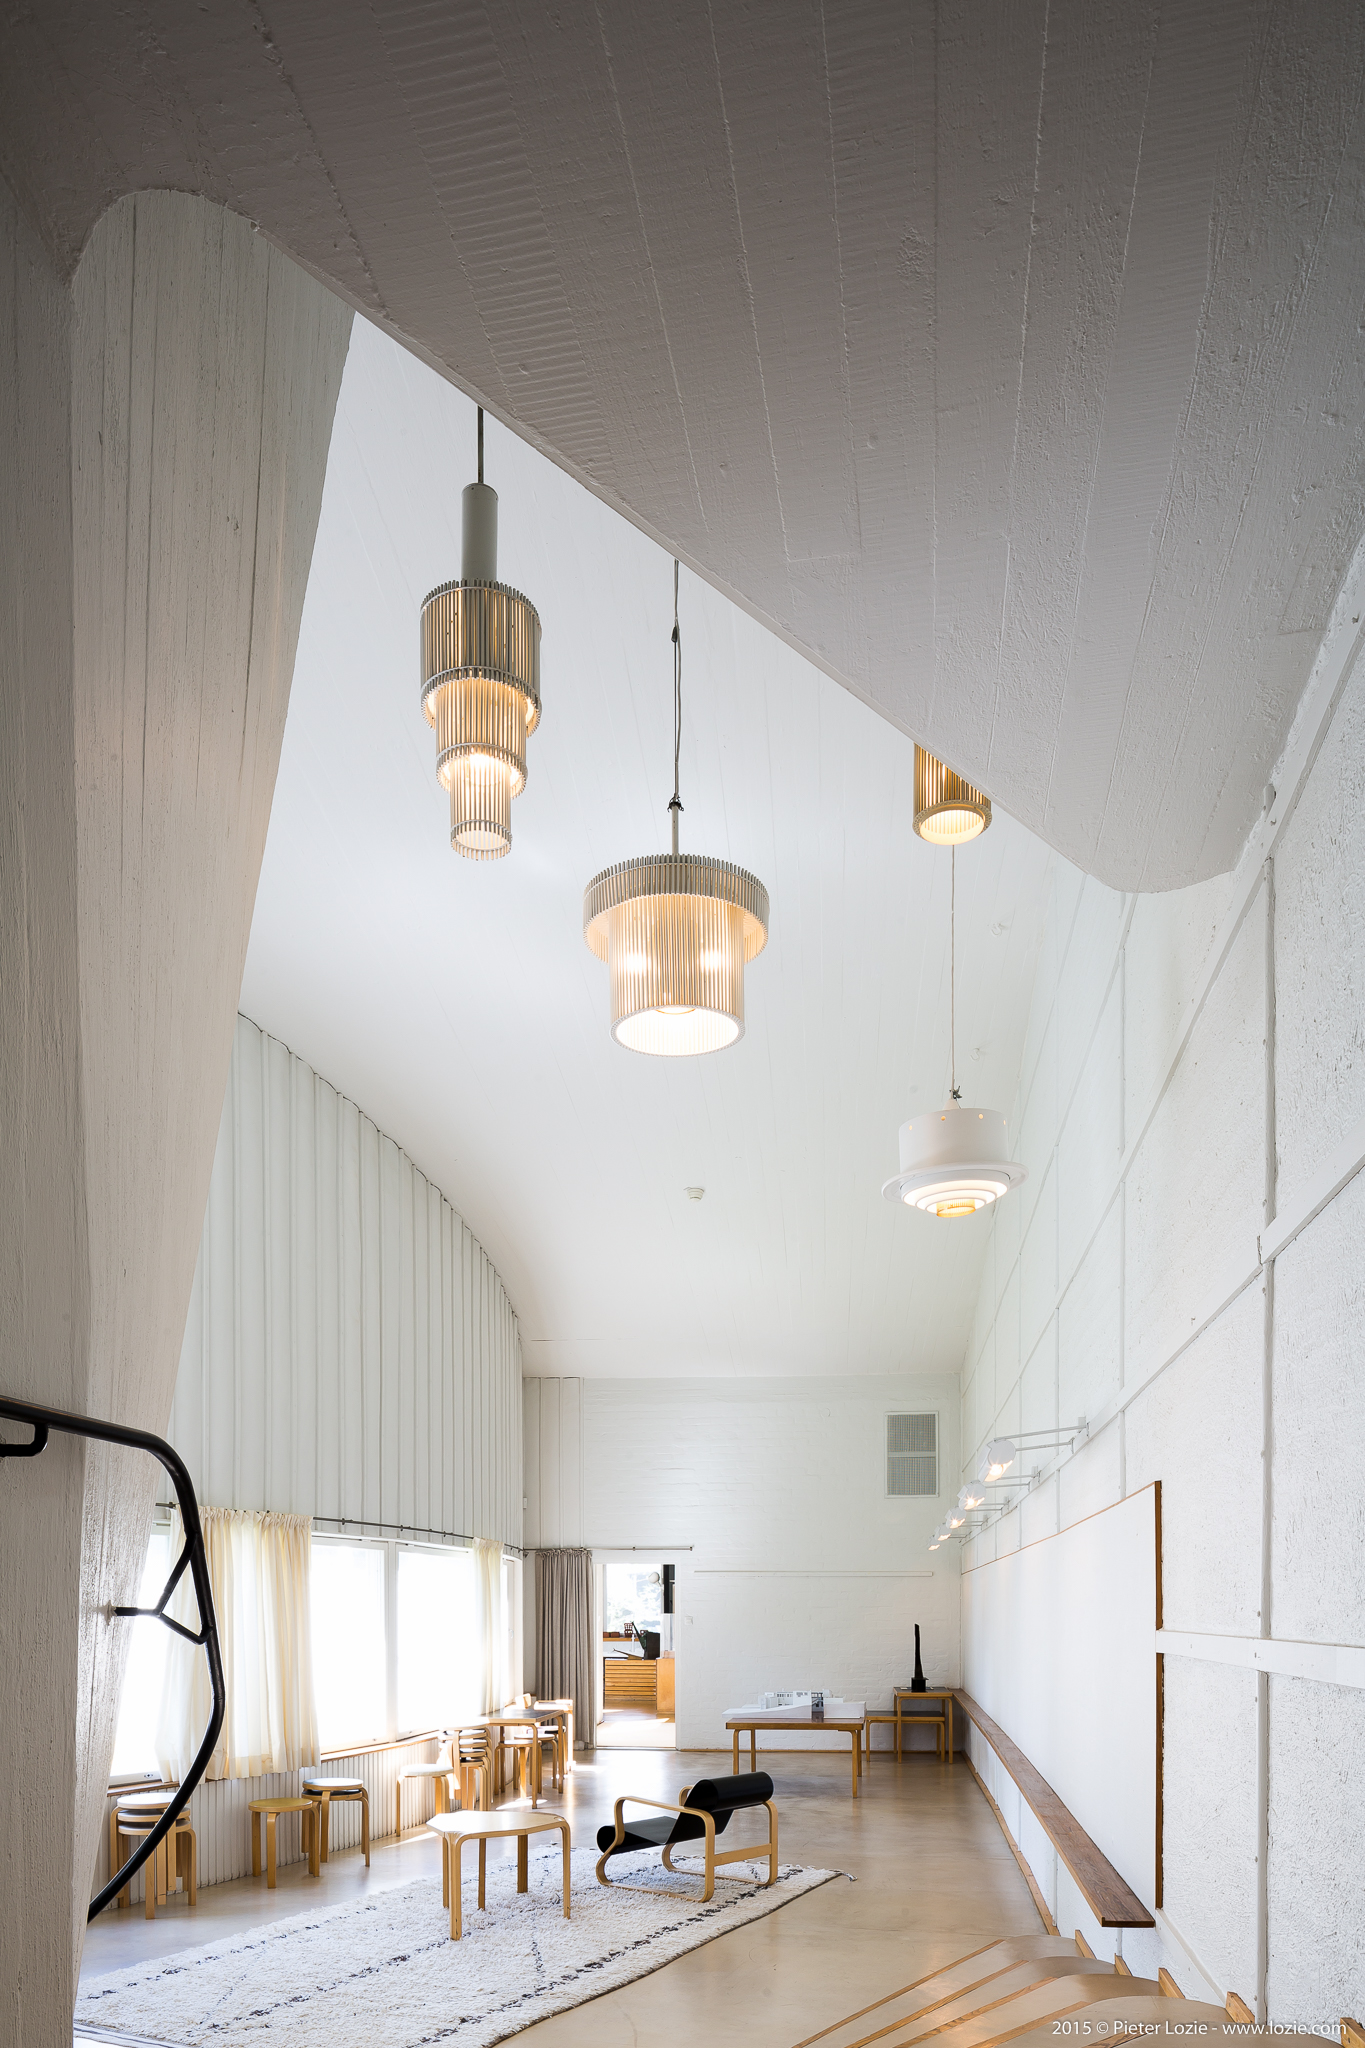 Alvar Aalto Studio, Helsinki, Finland | Pieter Lozie – Photography